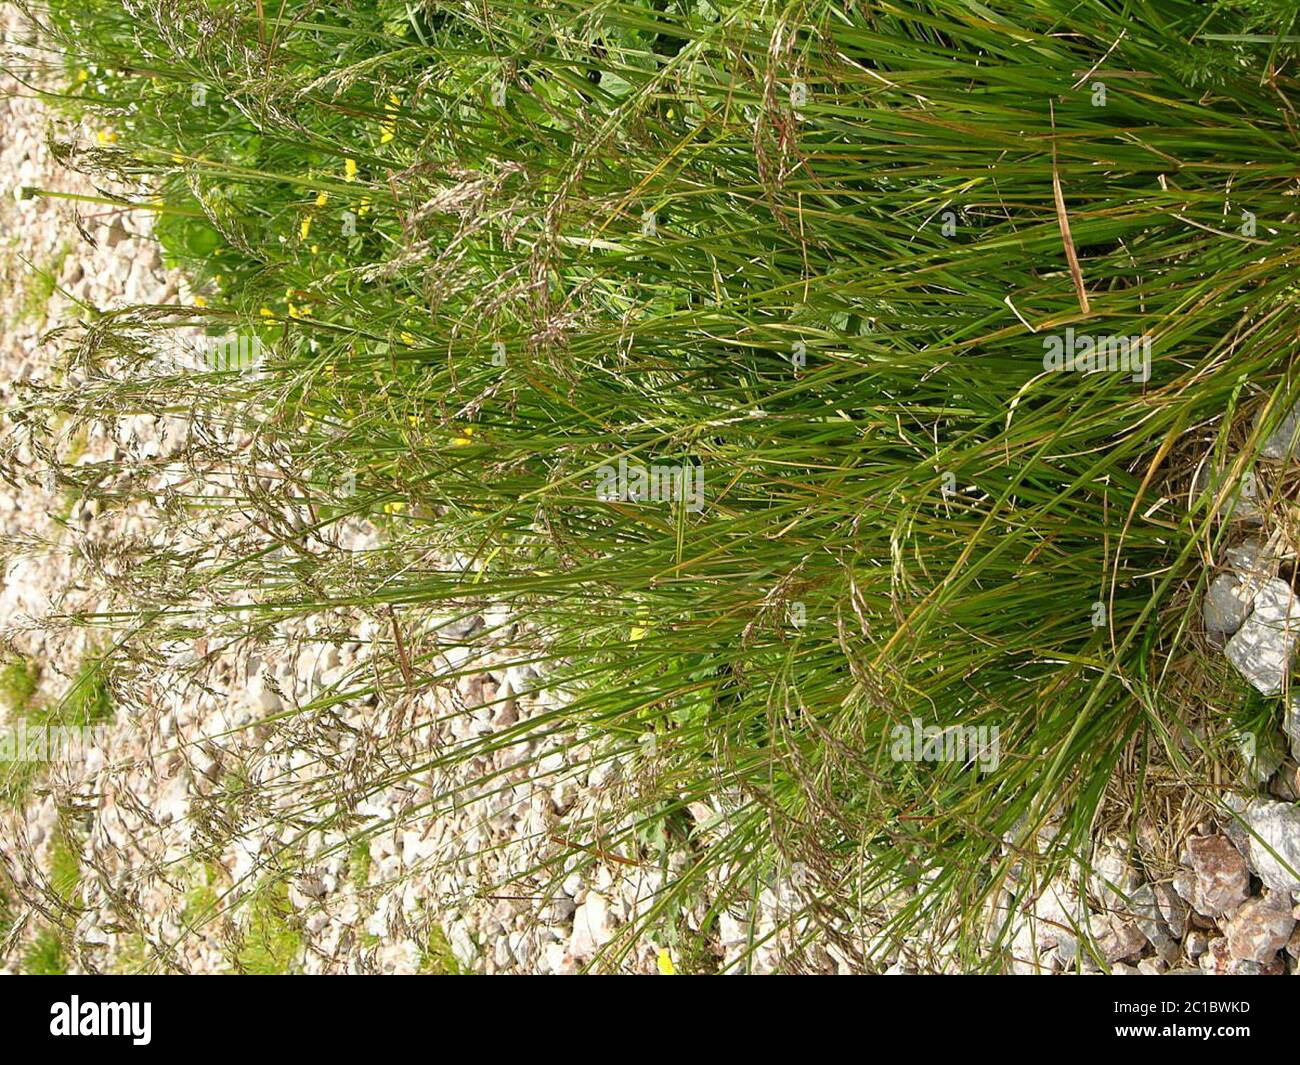 Poa alpina subsp vivipara L Arcang Poa alpina subsp vivipara L Arcang. Stock Photo